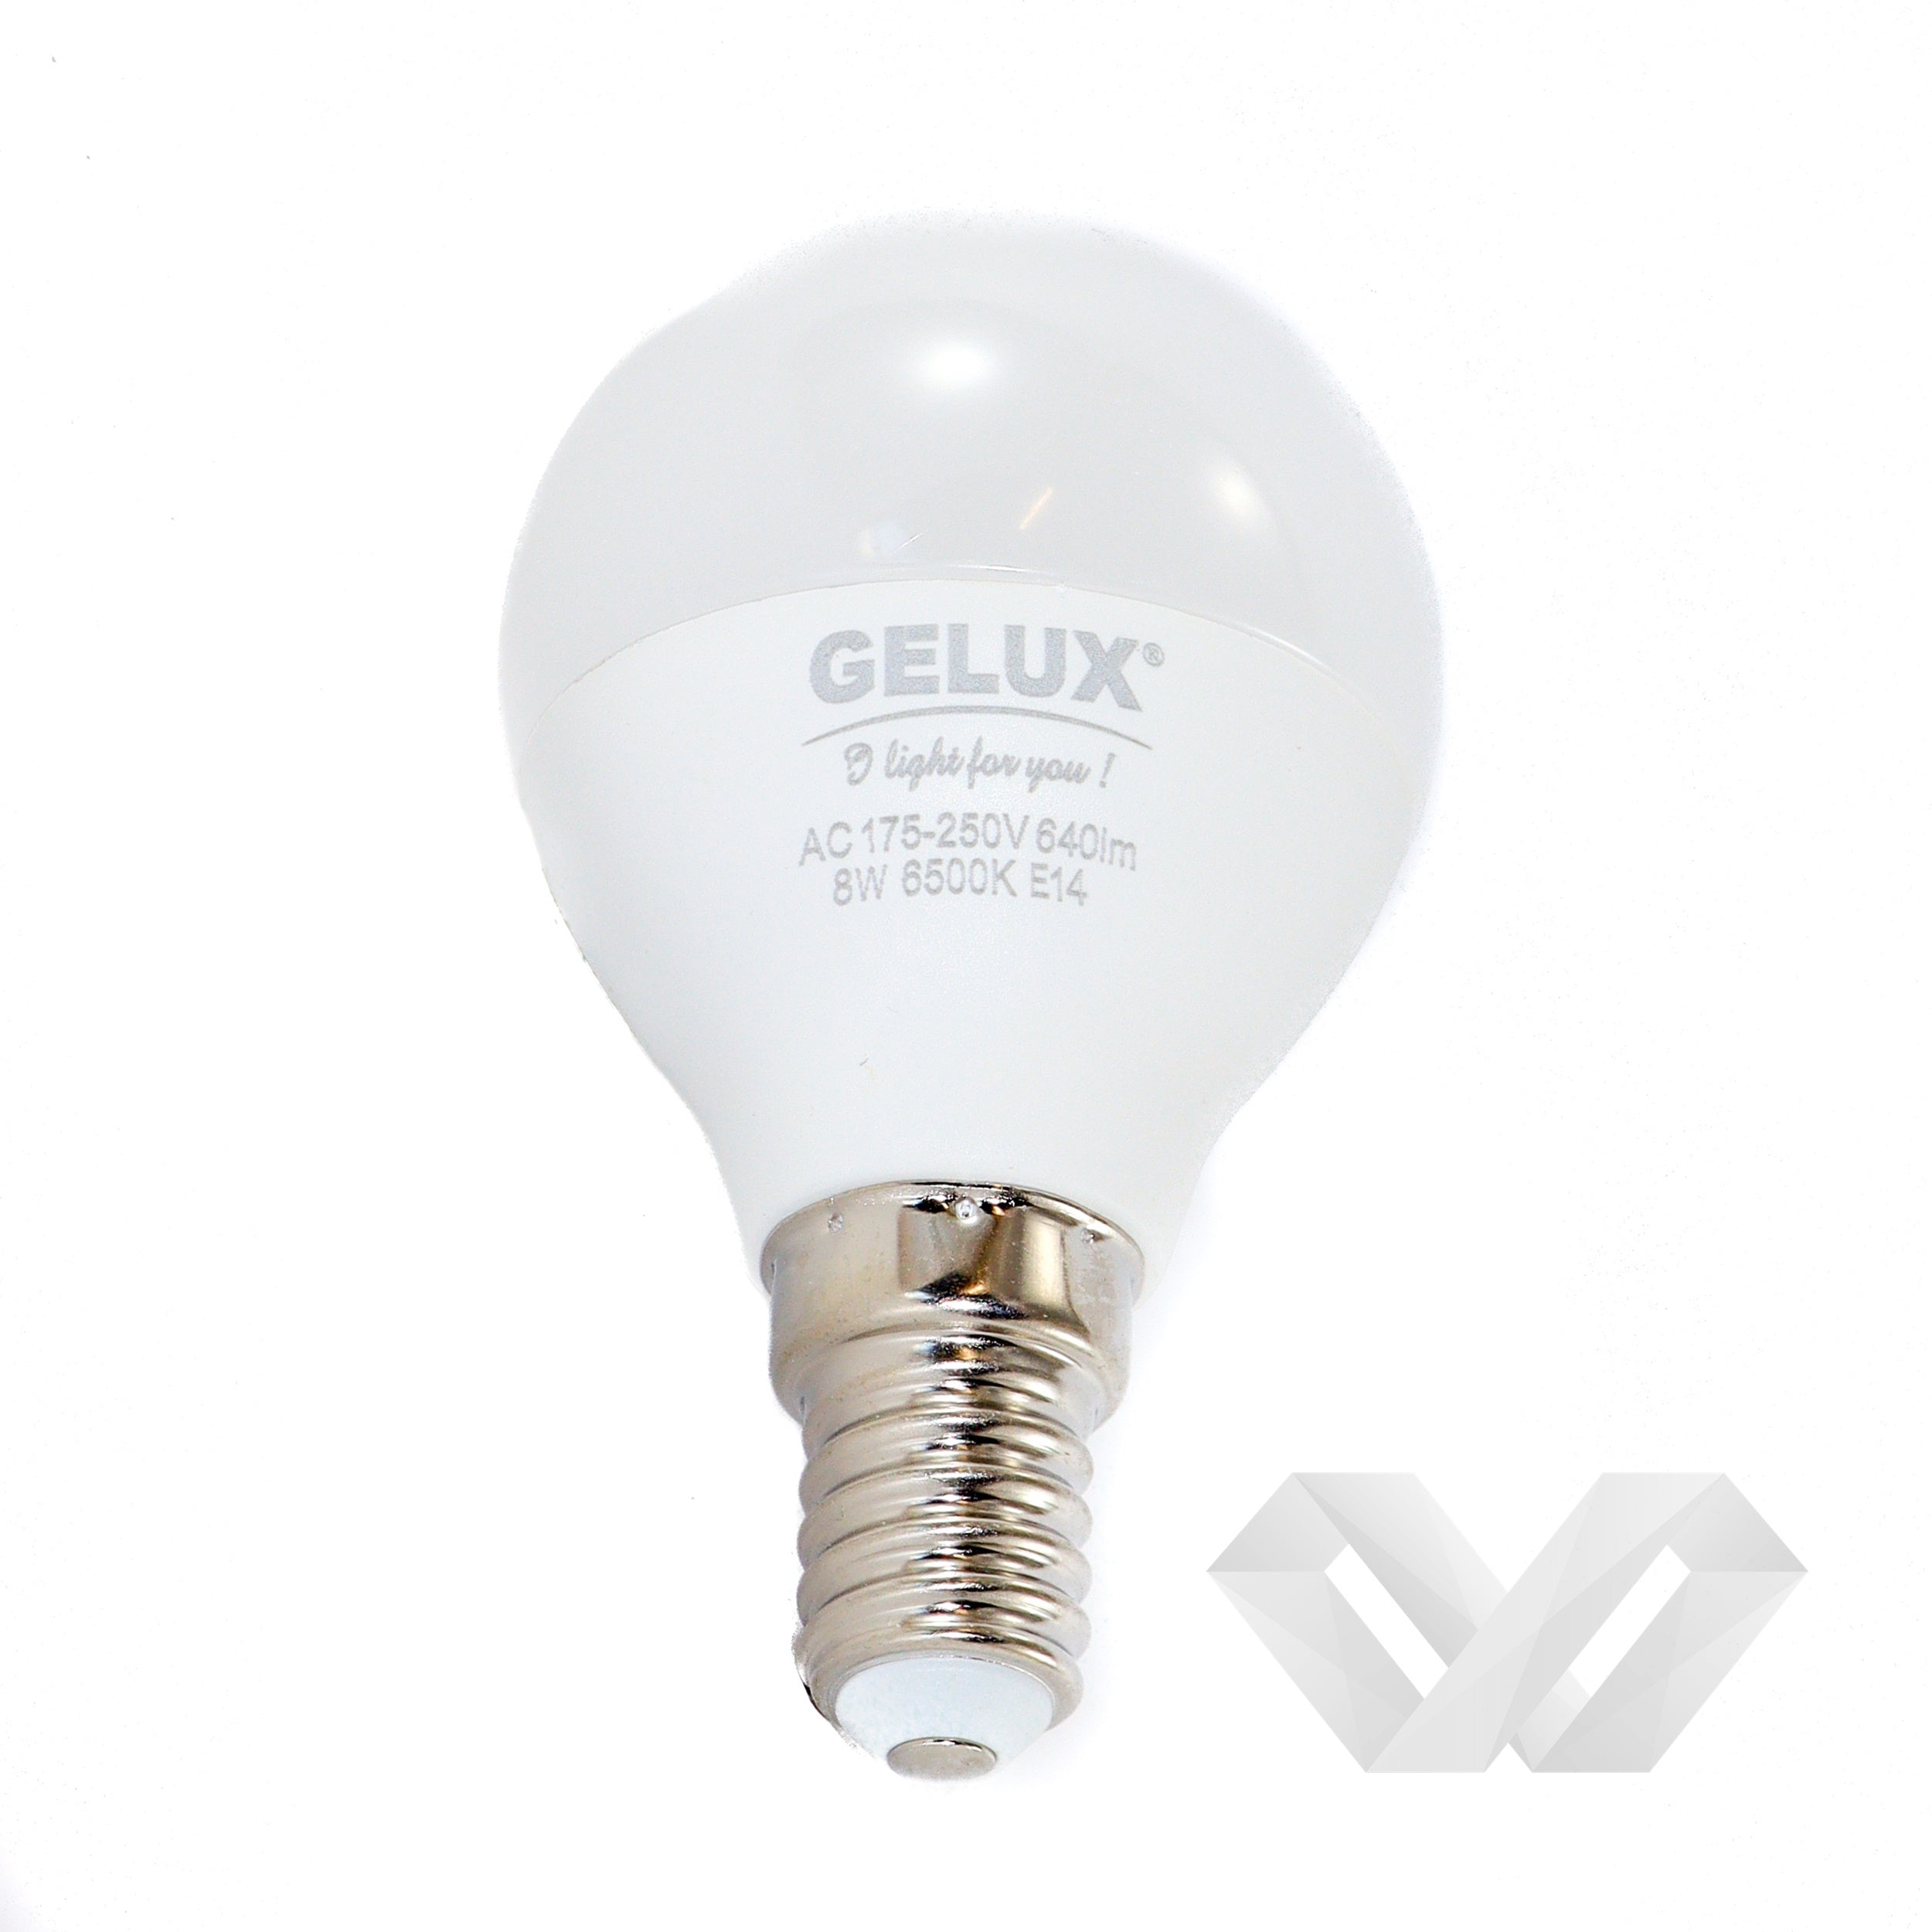 Bec LED Sferic 5W E14 ECOLED, echivalent 40W lumina calda, Gelux